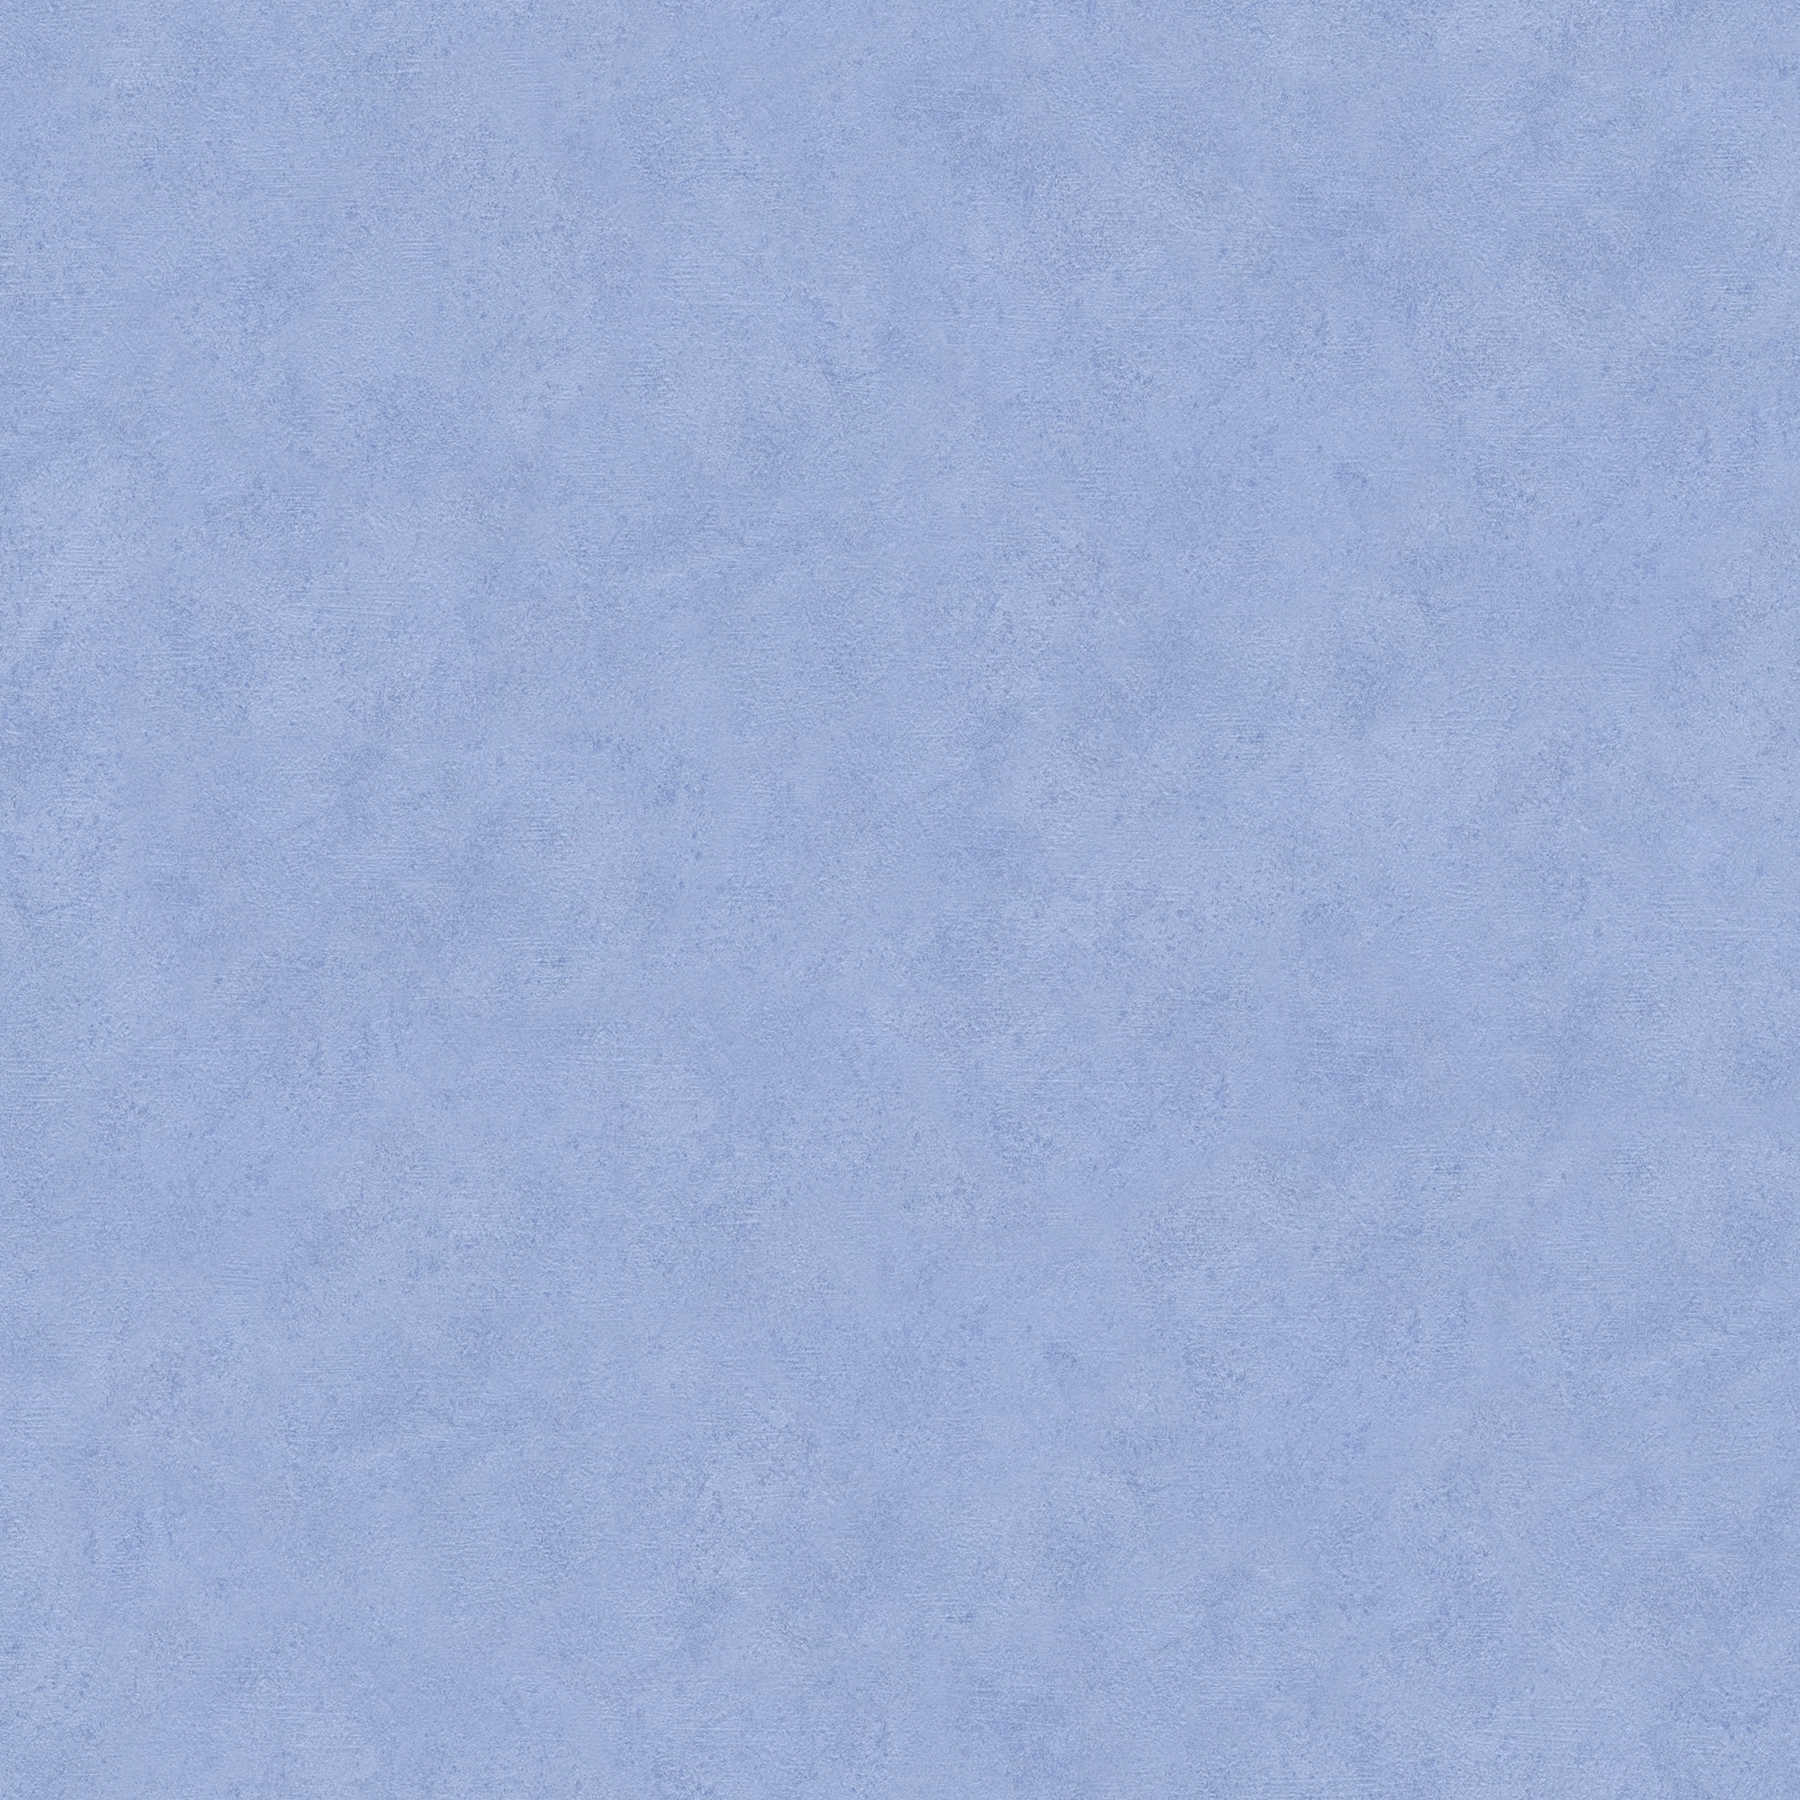         Blaue Papiertapete mit Schraffur & Strukturmuster – Blau
    